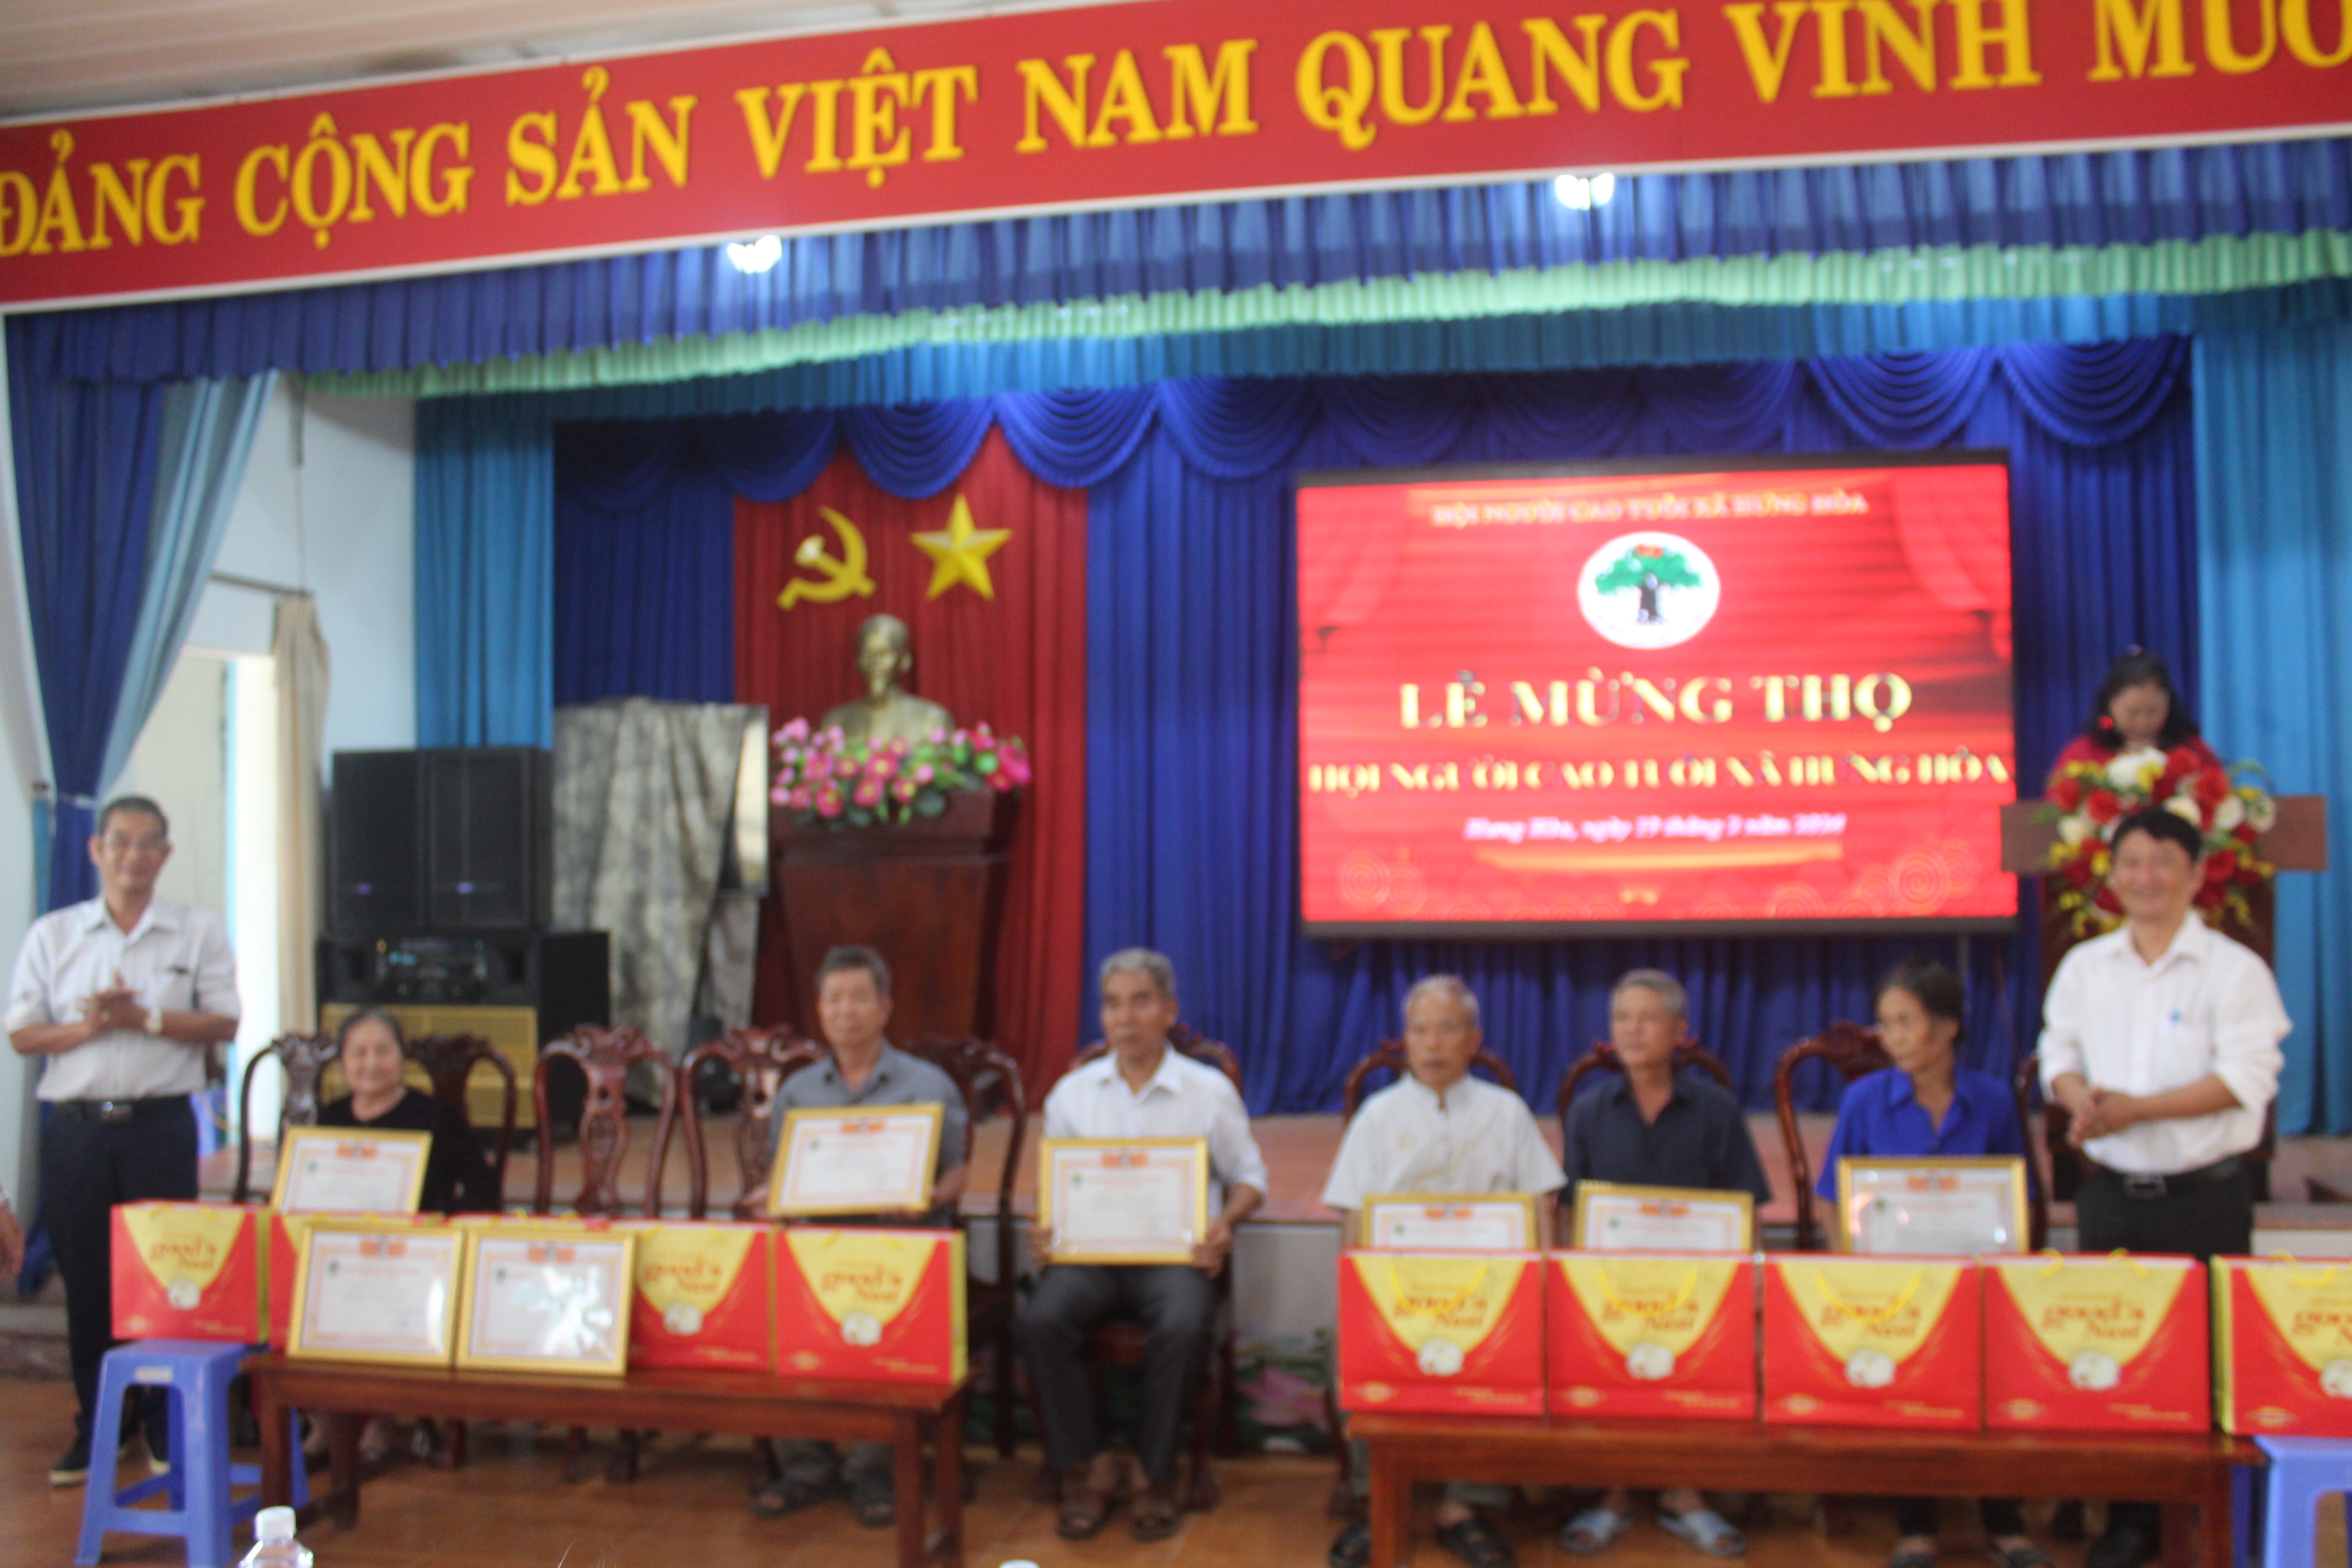 Xã Hưng Hoà: Hội NCT xã Hưng Hòa tổ chức lễ chúc mừng mừng thọ năm 2024 cho người cao tuổi trên địa bàn xã Hưng Hoà.